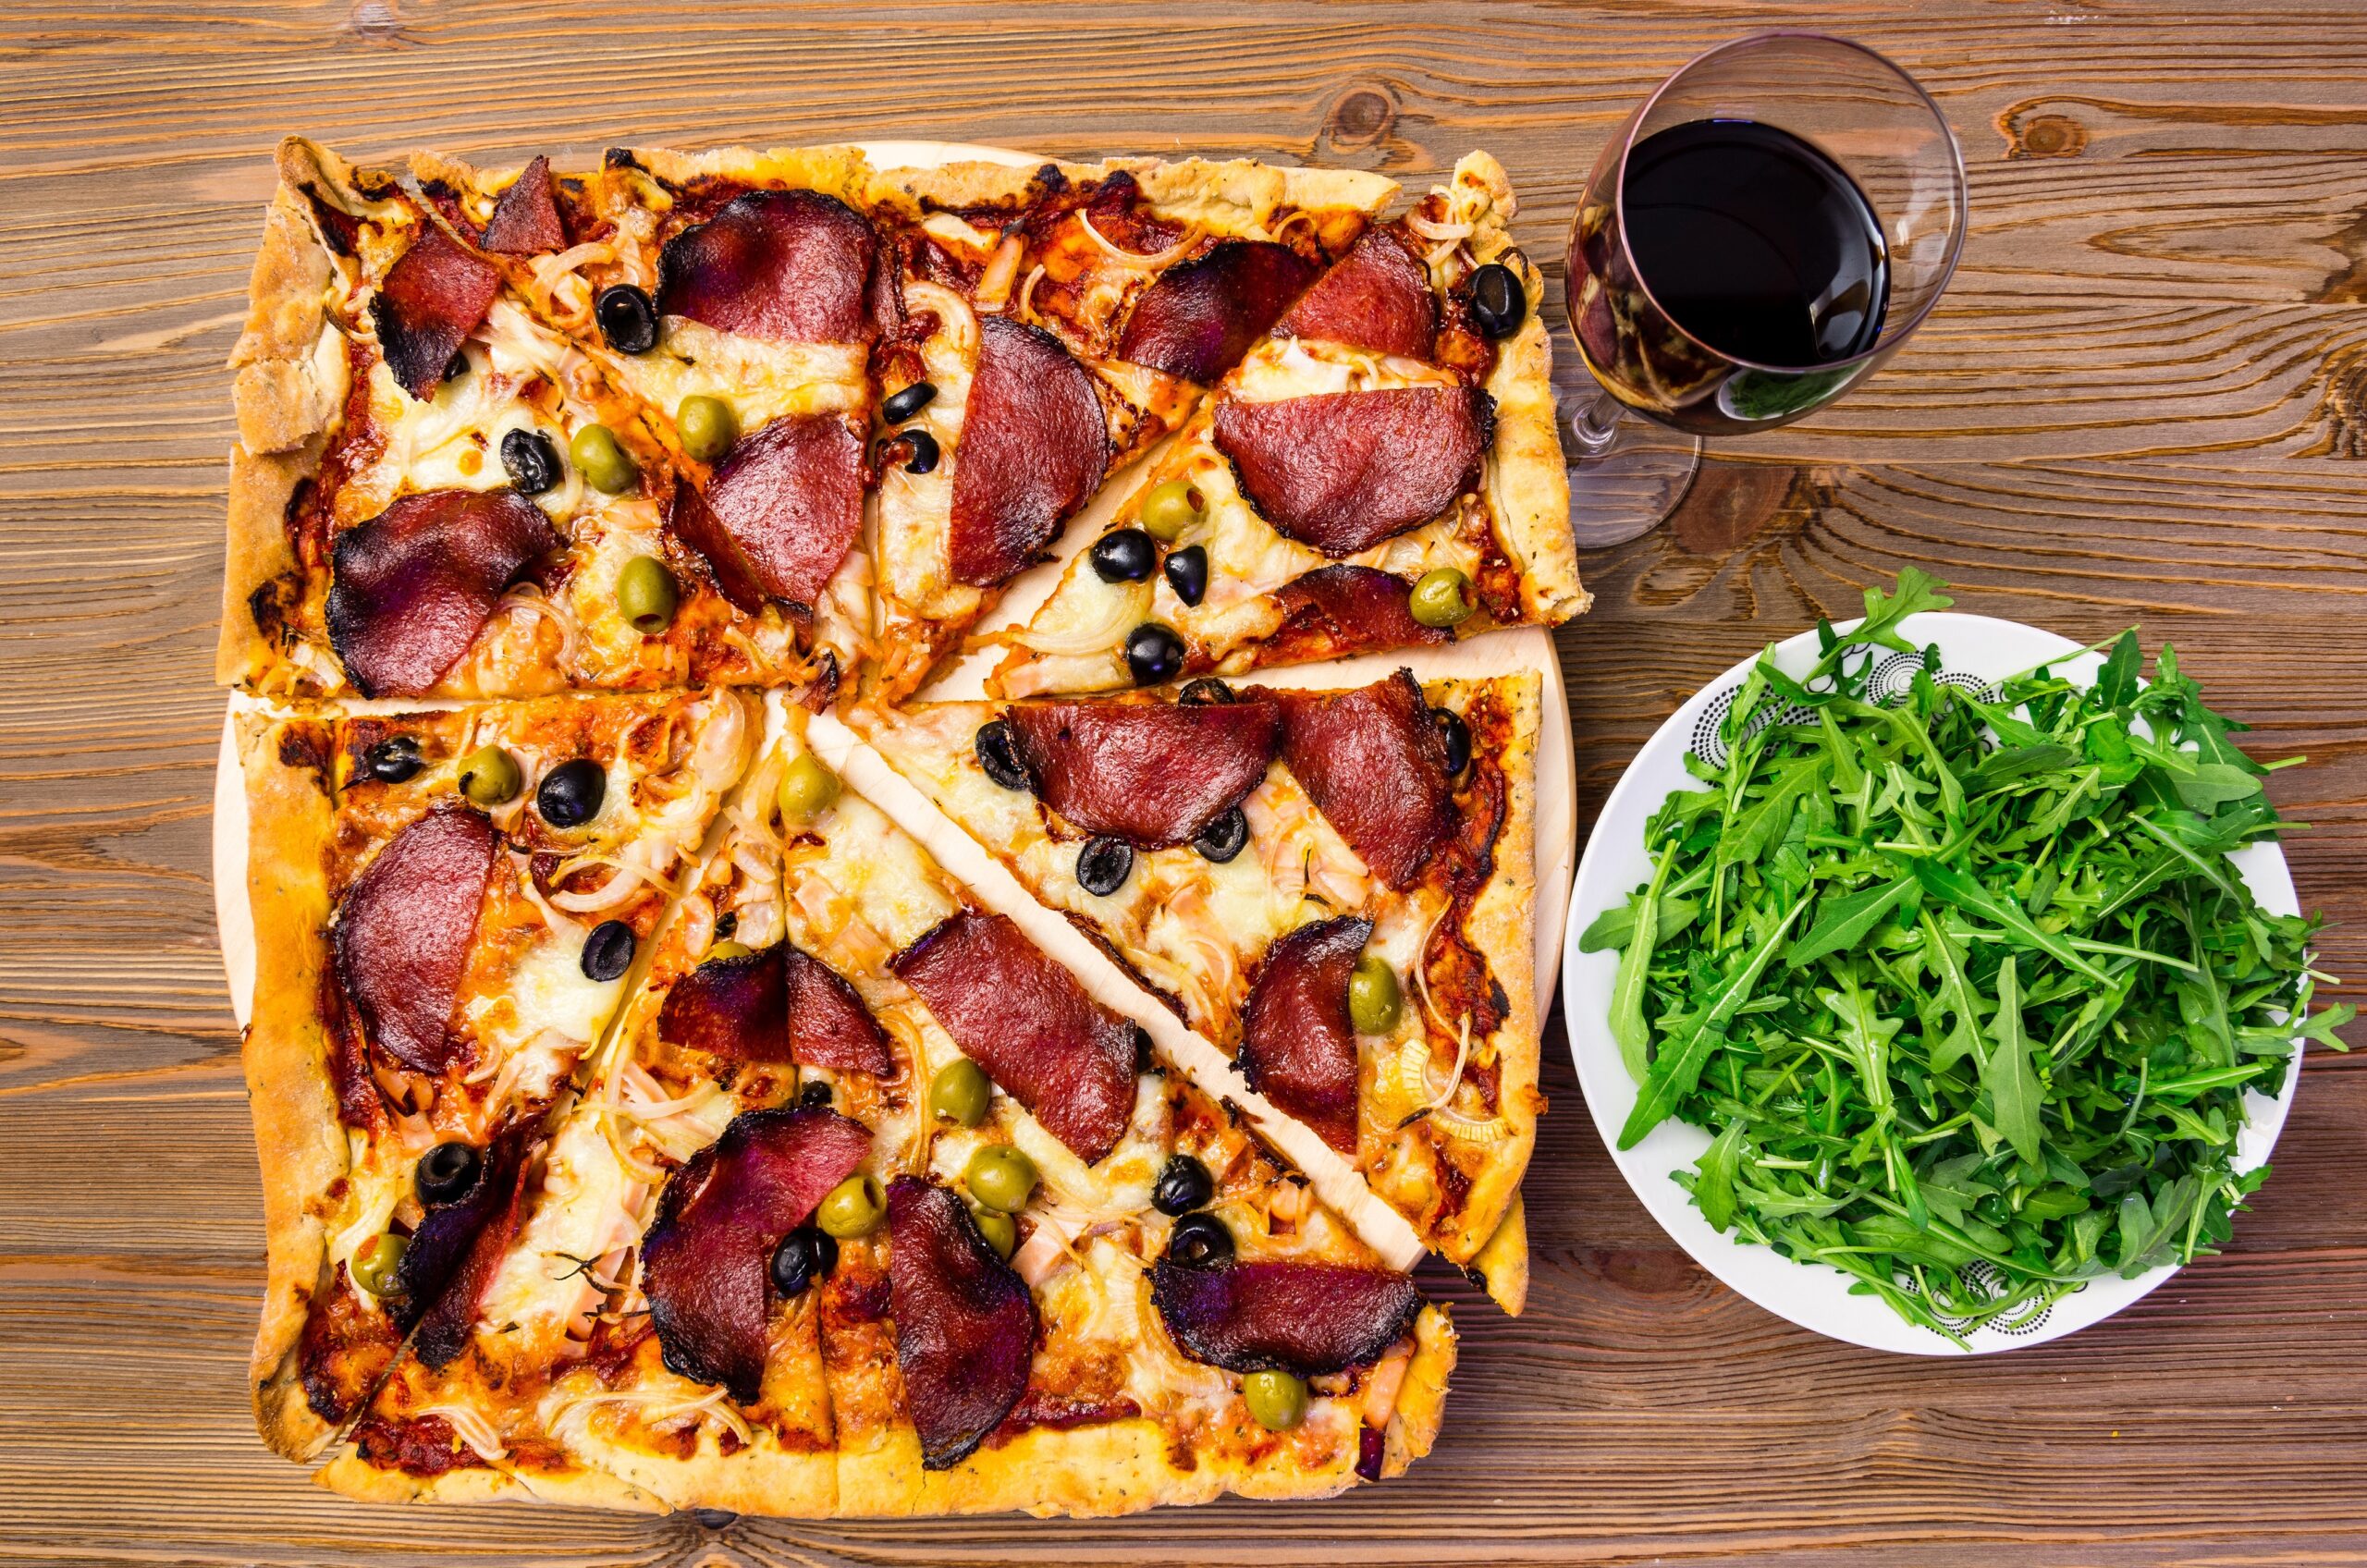 Pyszna domowa pizza lezy na stole koło rukoli i szklanki z napojem